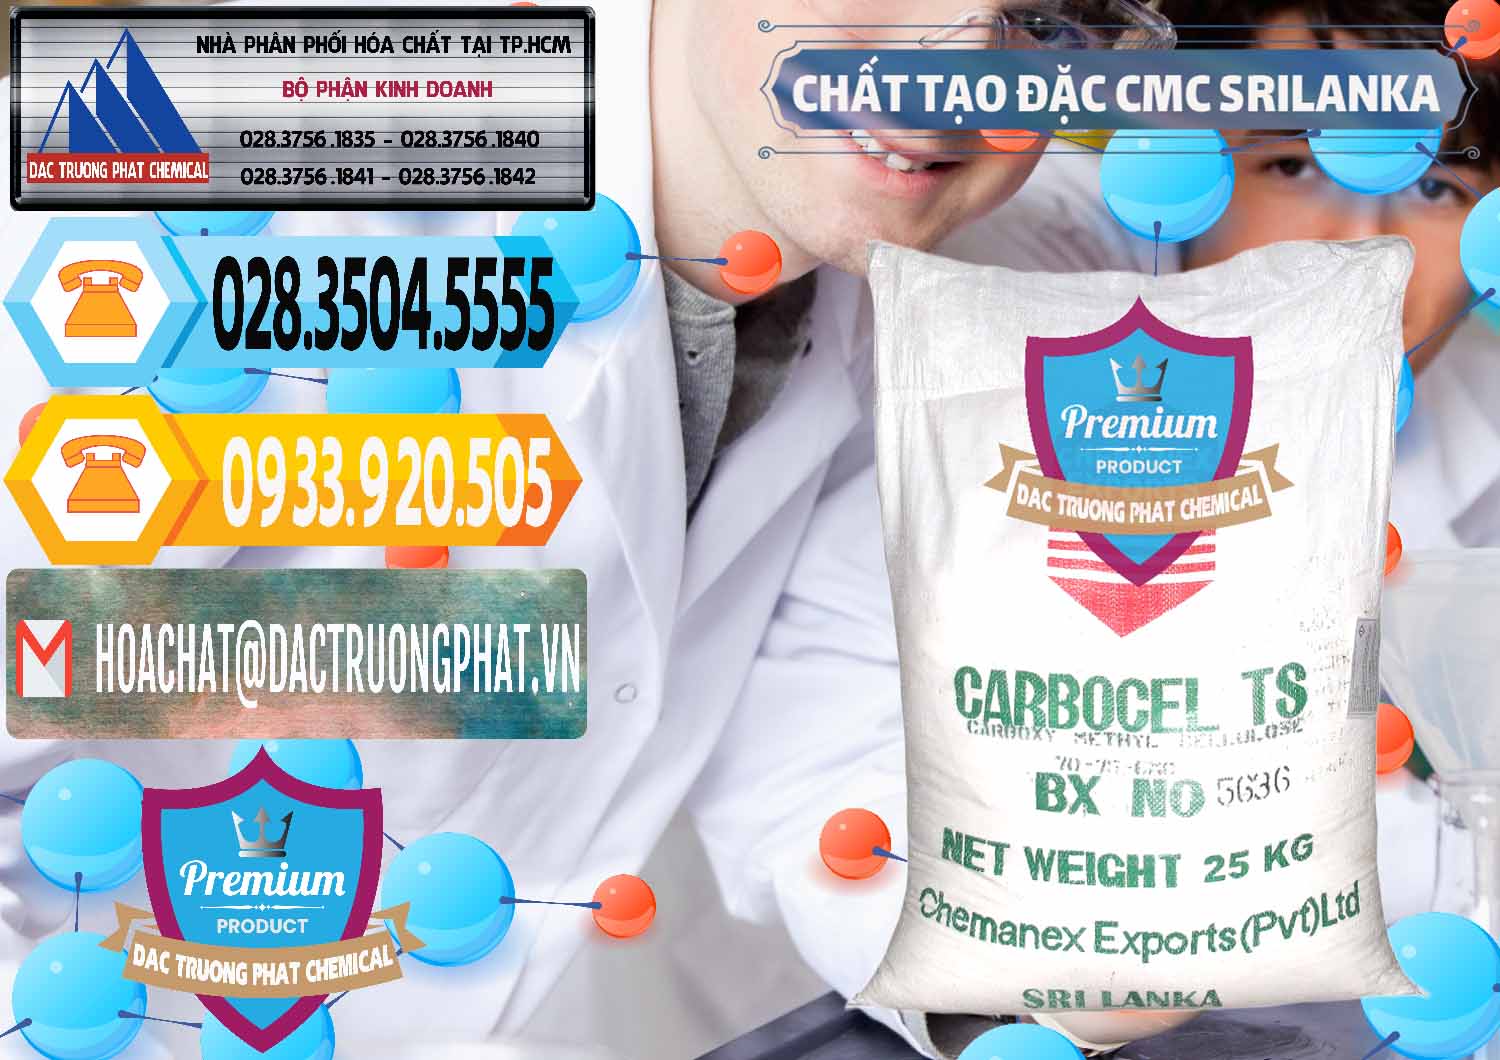 Công ty bán _ phân phối Chất Tạo Đặc CMC - Carboxyl Methyl Cellulose Srilanka - 0045 - Chuyên cung cấp - phân phối hóa chất tại TP.HCM - hoachattayrua.net